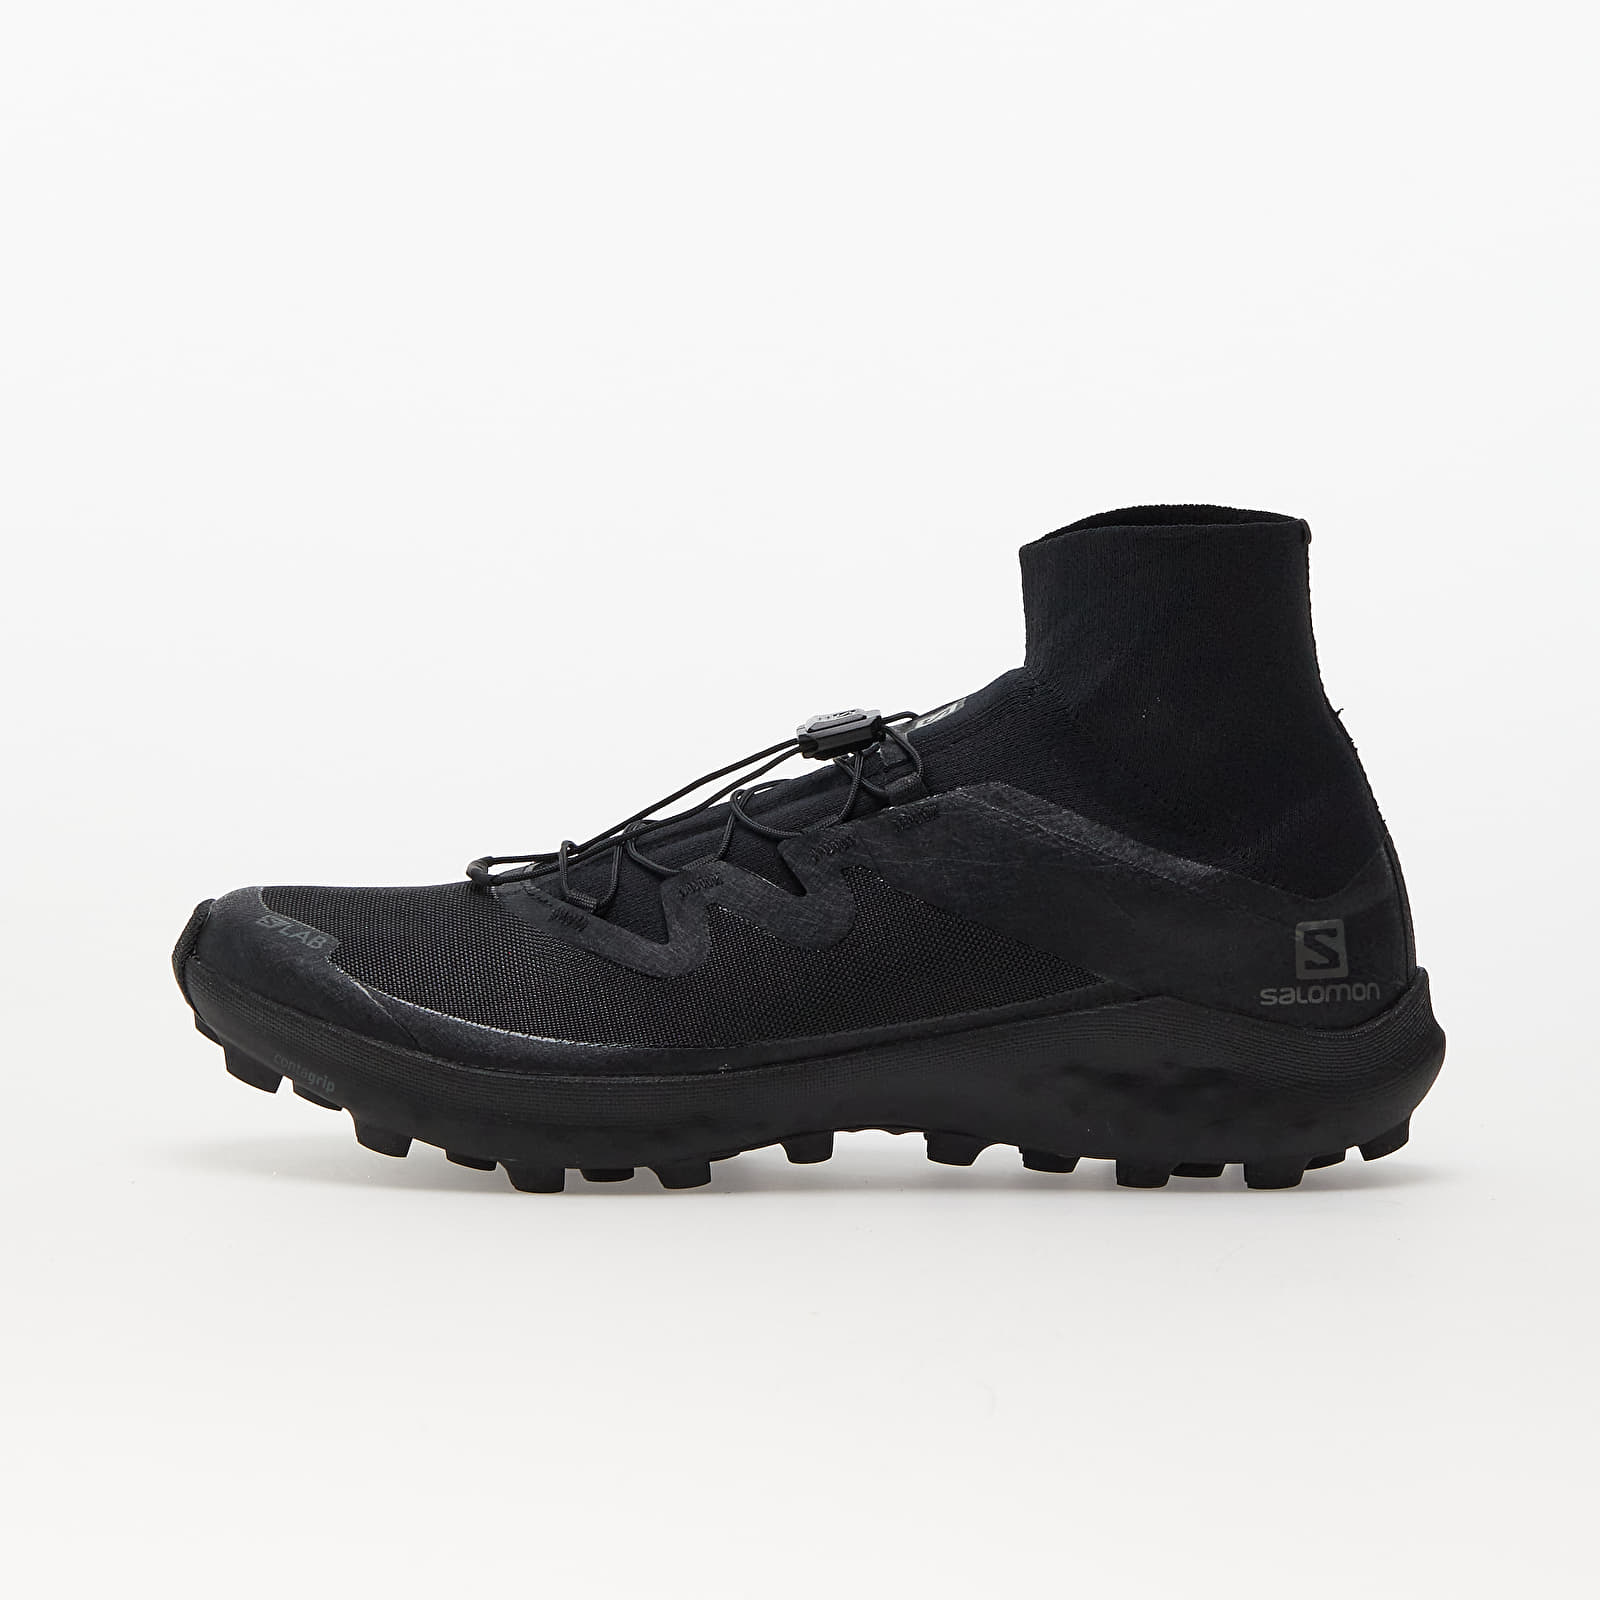 Men's shoes Salomon S/LAB Cross LTD Black